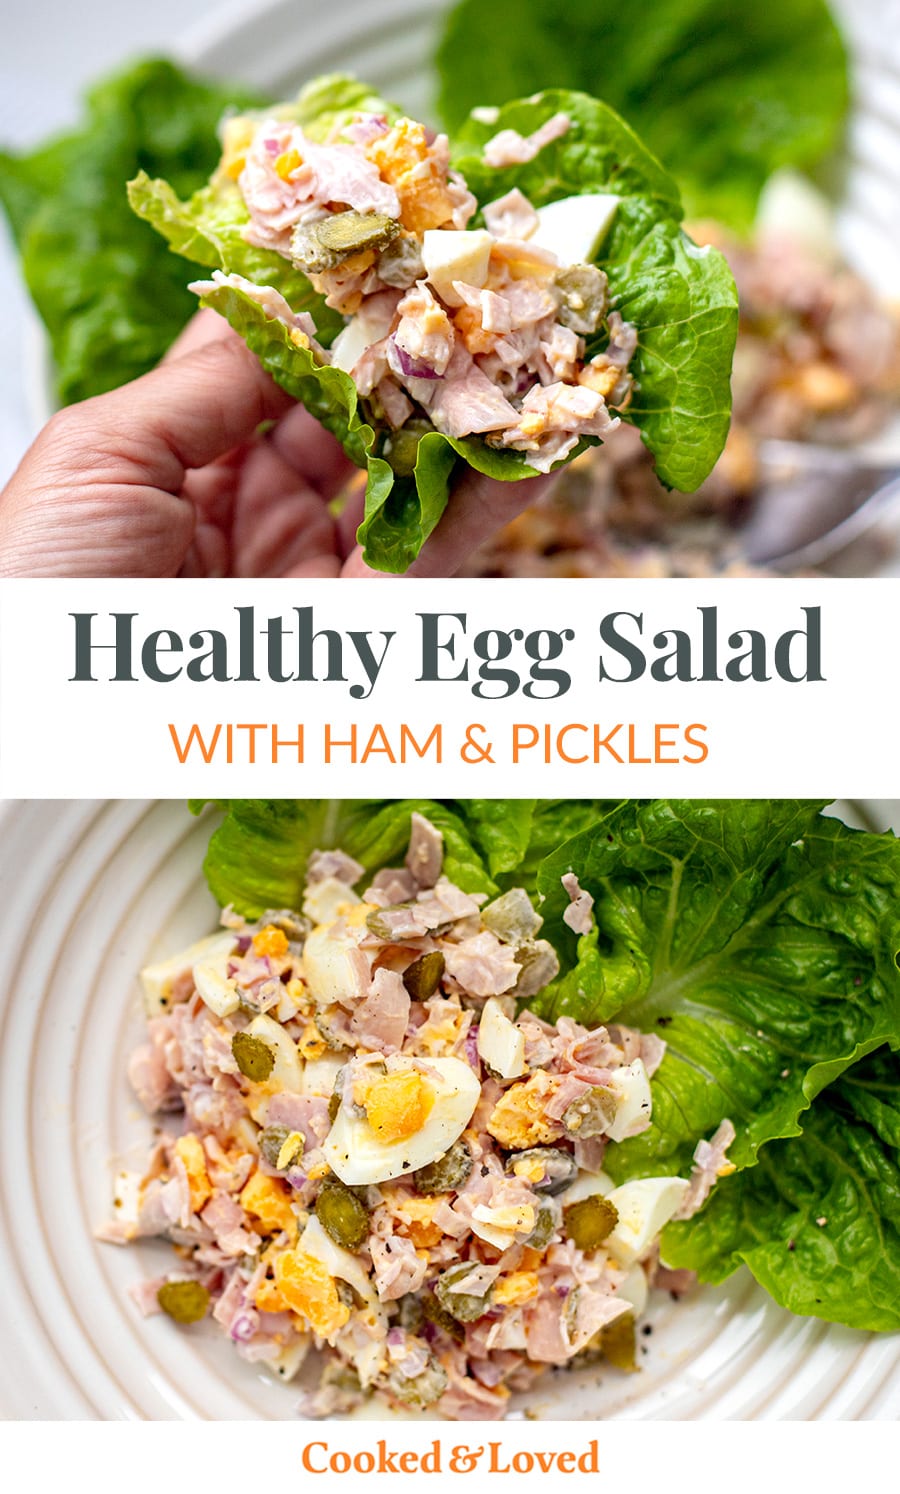 Egg Salad With Ham & Pickles